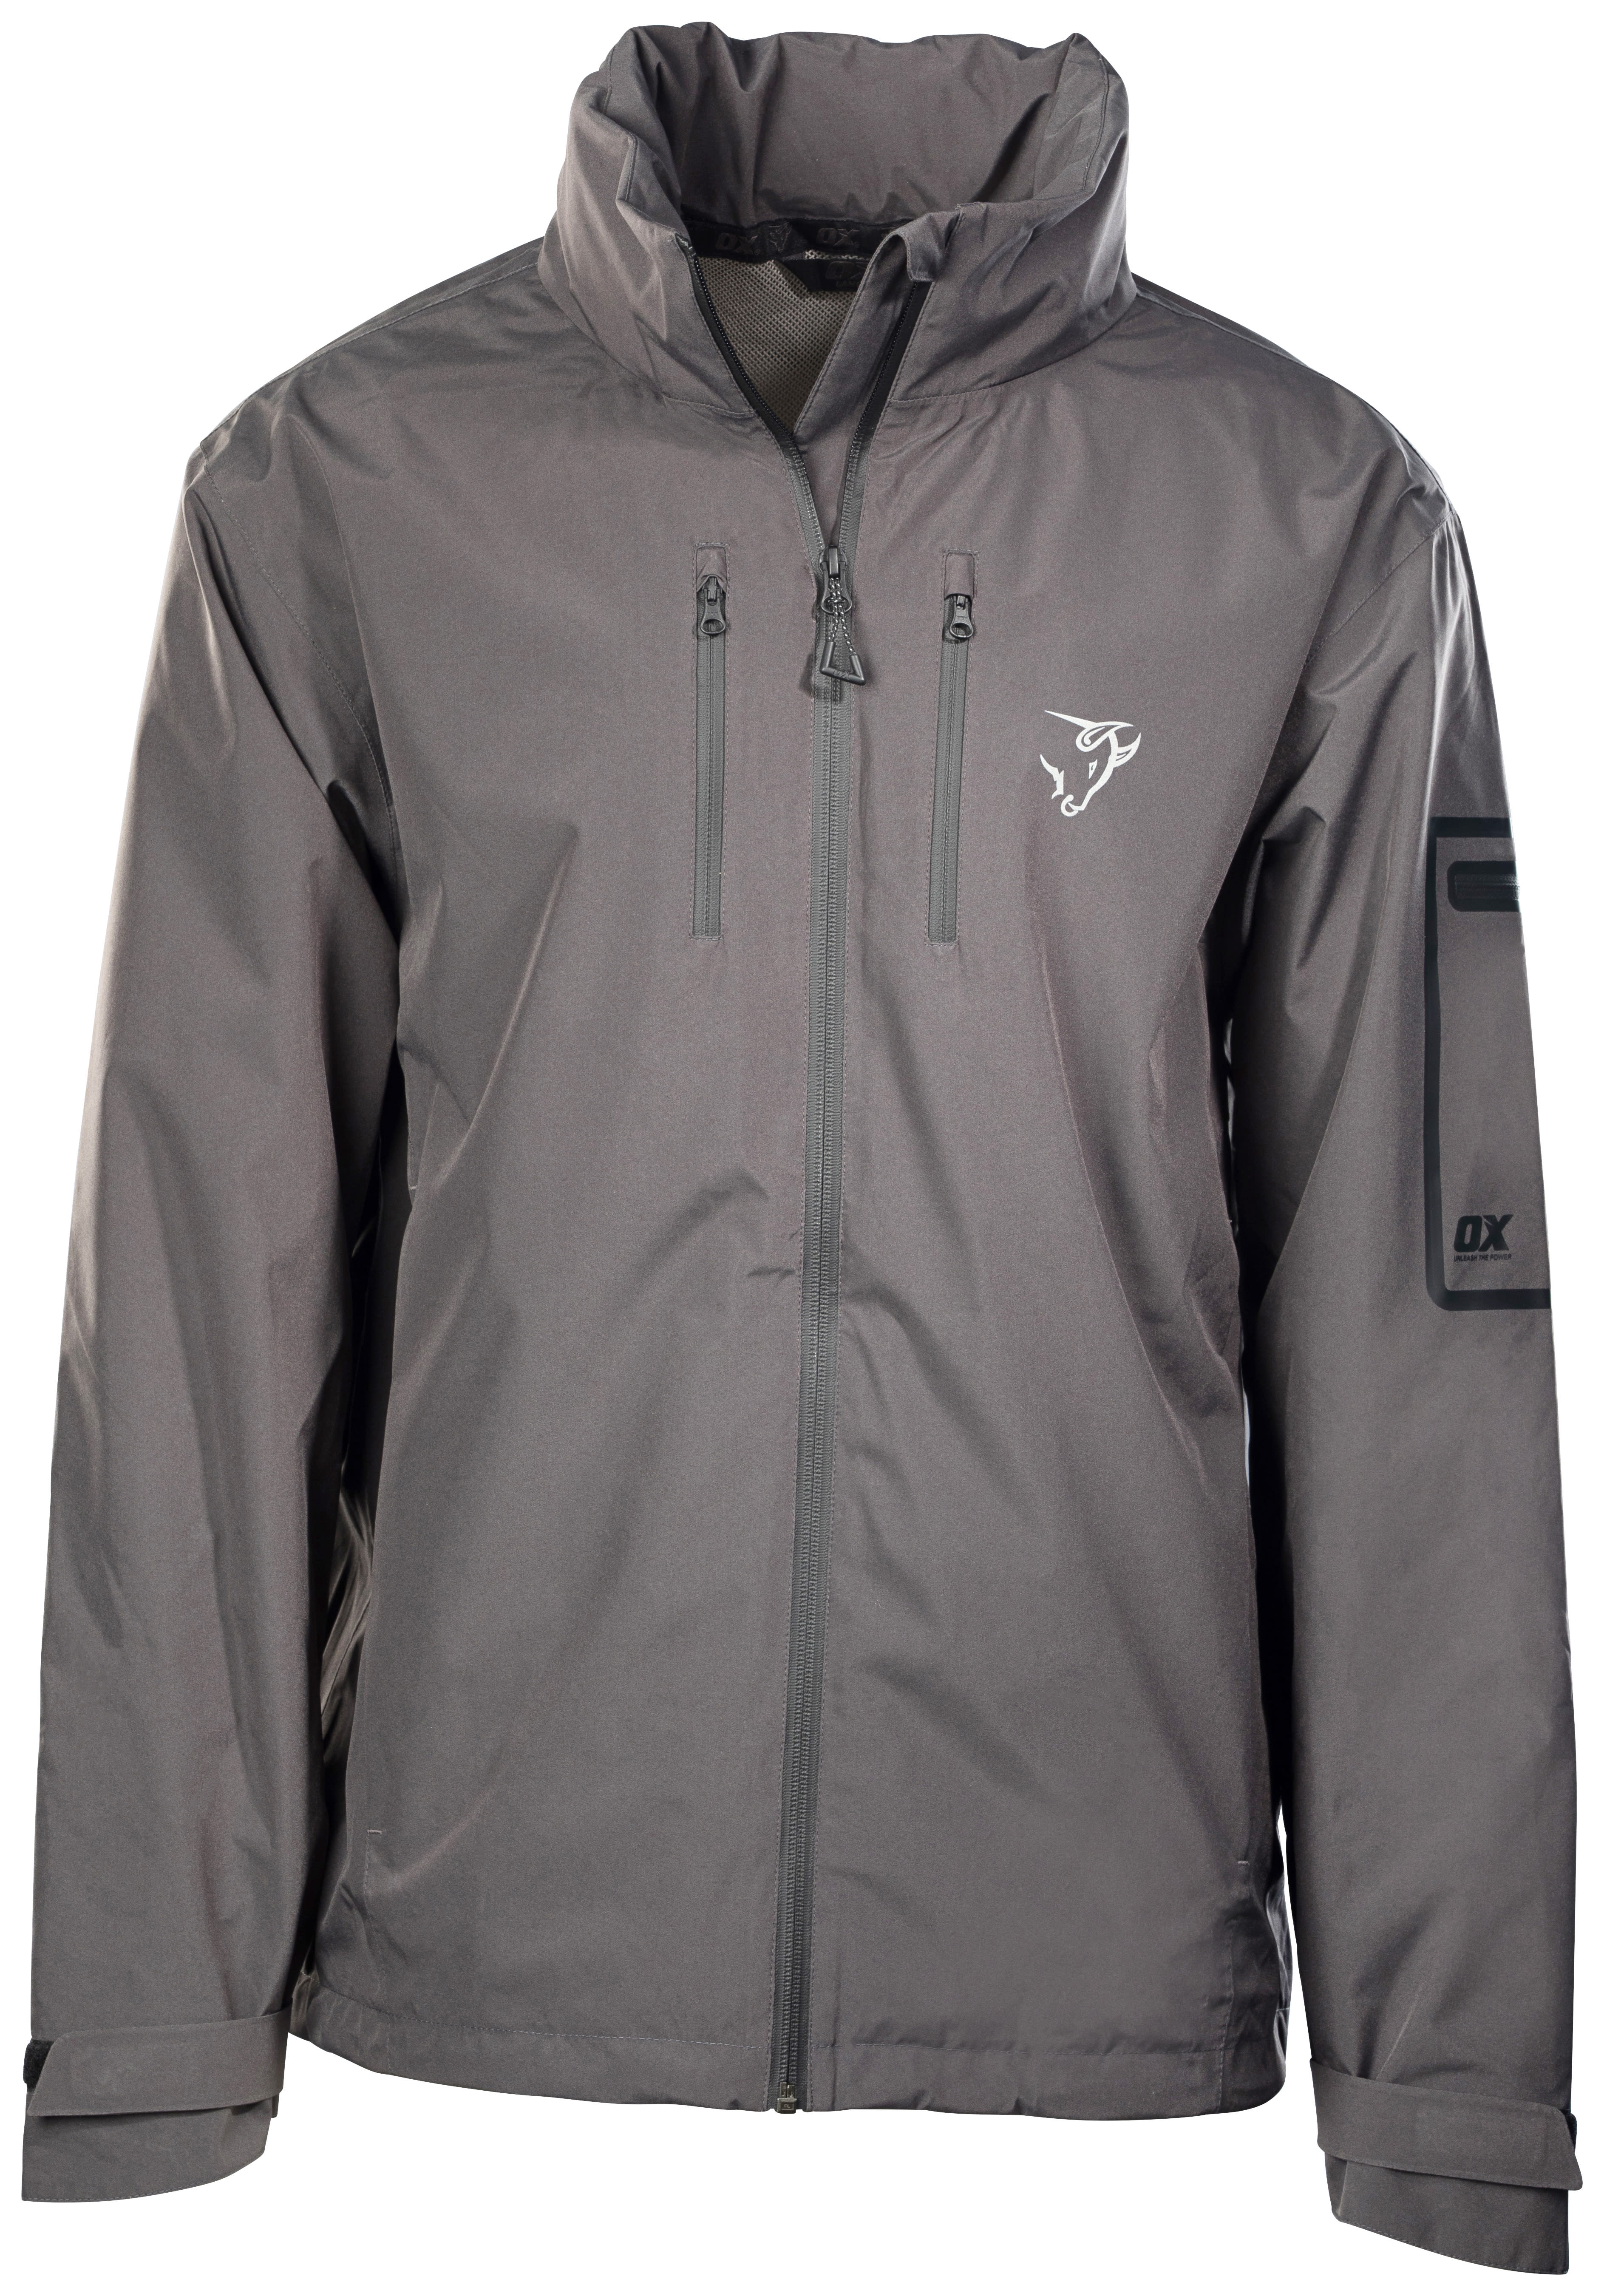 OX Packable Lightweight Grey Jacket